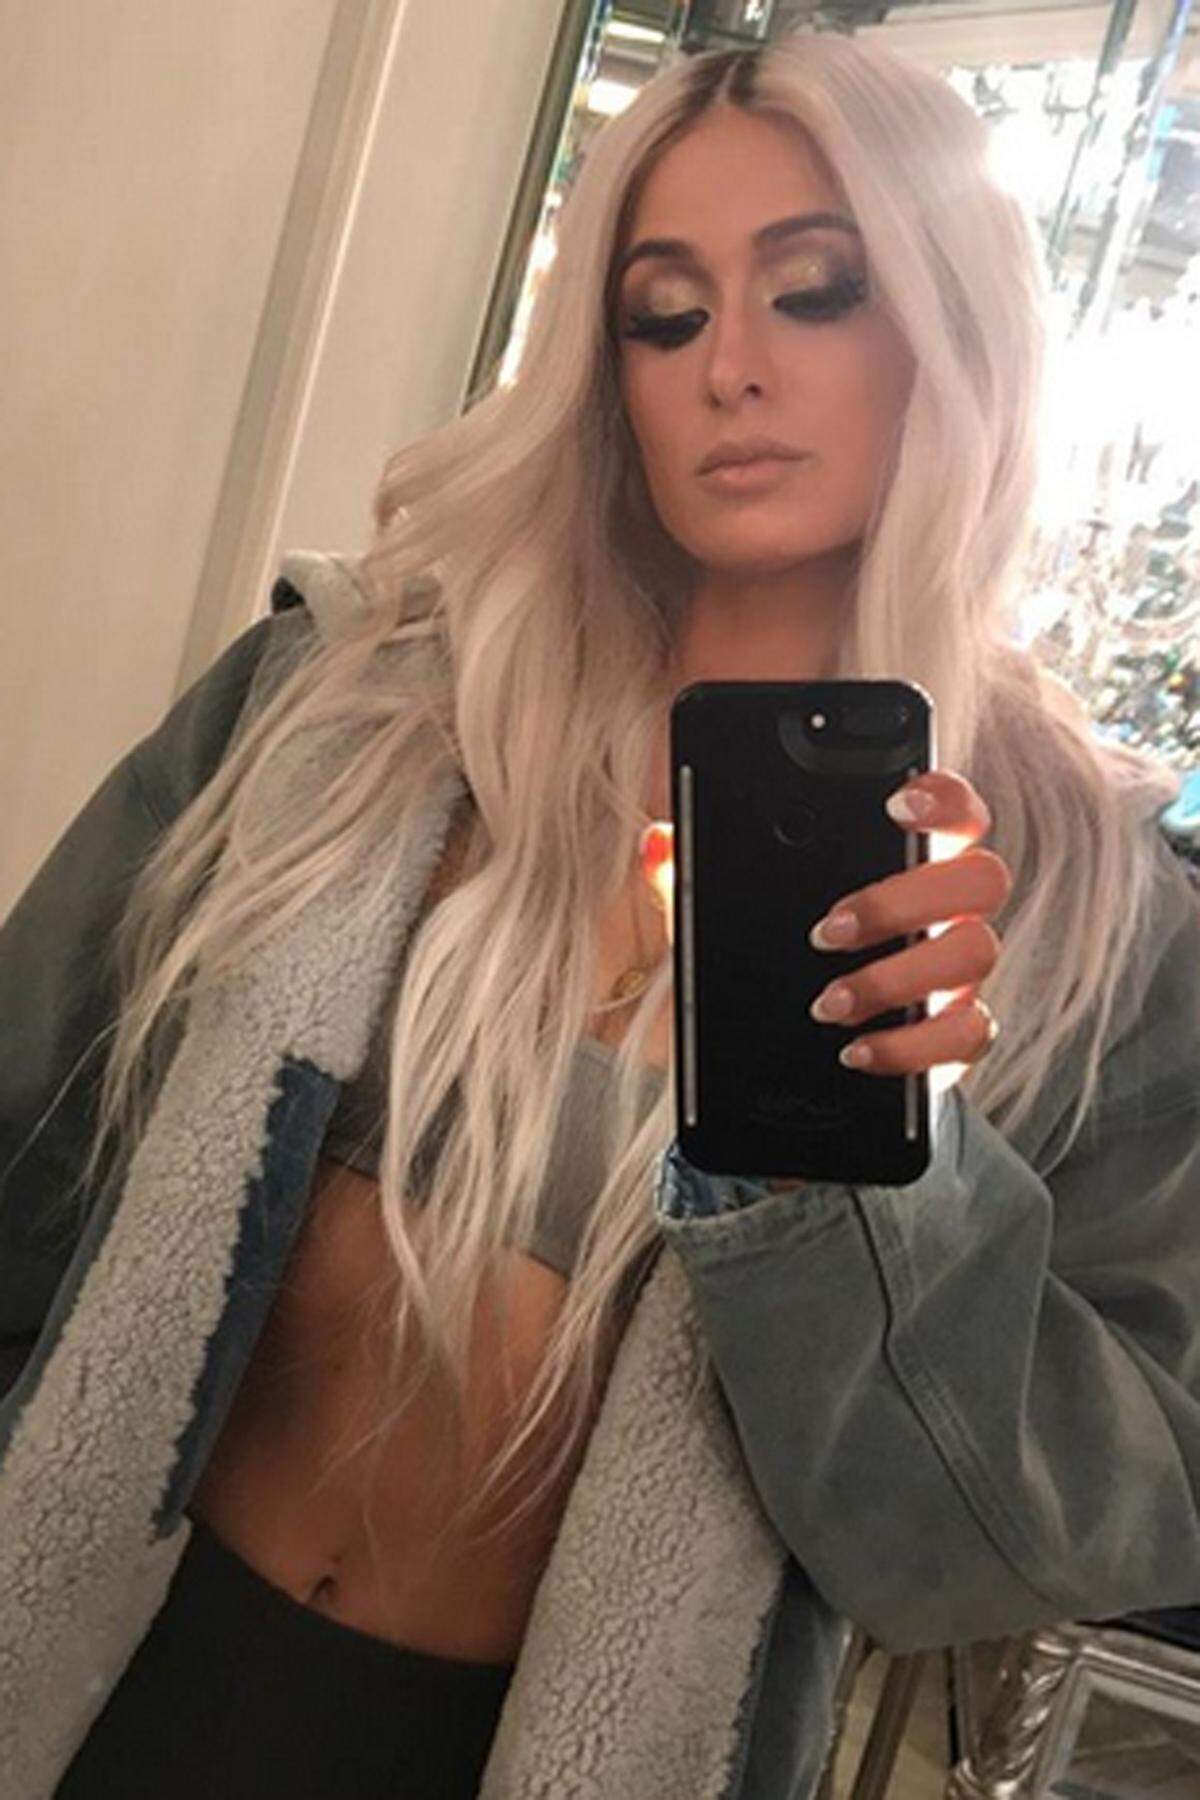 Paris Hilton ist nicht etwa in Faschingslaune. Sie hat sich in den Reality-Star verwandelt, um so für die neue Yeezy-Kollektion von Kims Ehemann Kanye West zu werben und postet die vermeintlichen Paparazzi-Fotos fleißig auf Instagram.